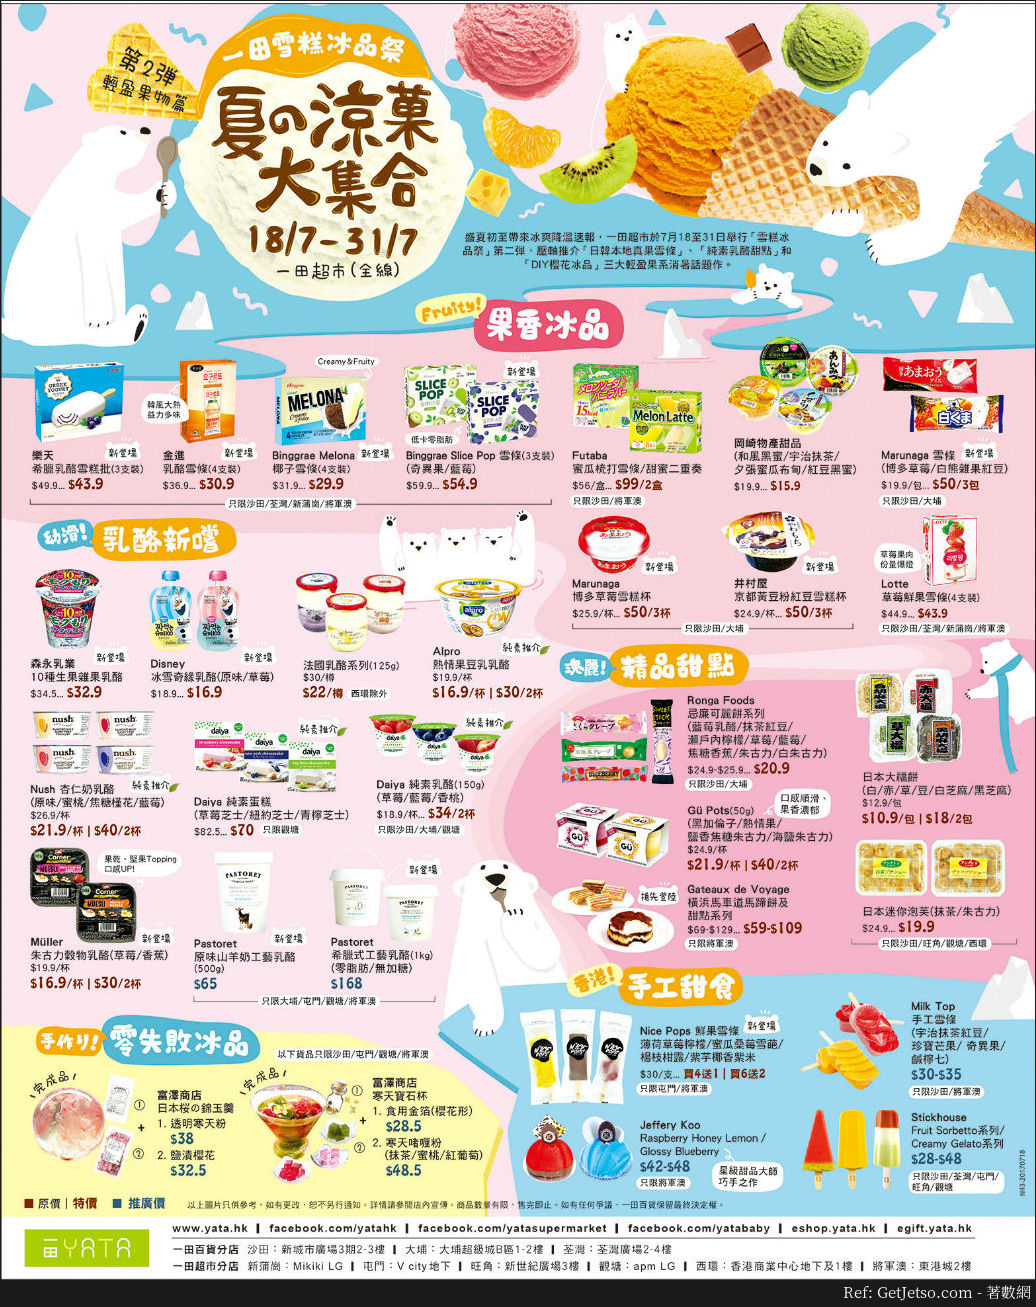 一田百貨雪糕冰品祭優惠(17年7月日18-31)圖片1